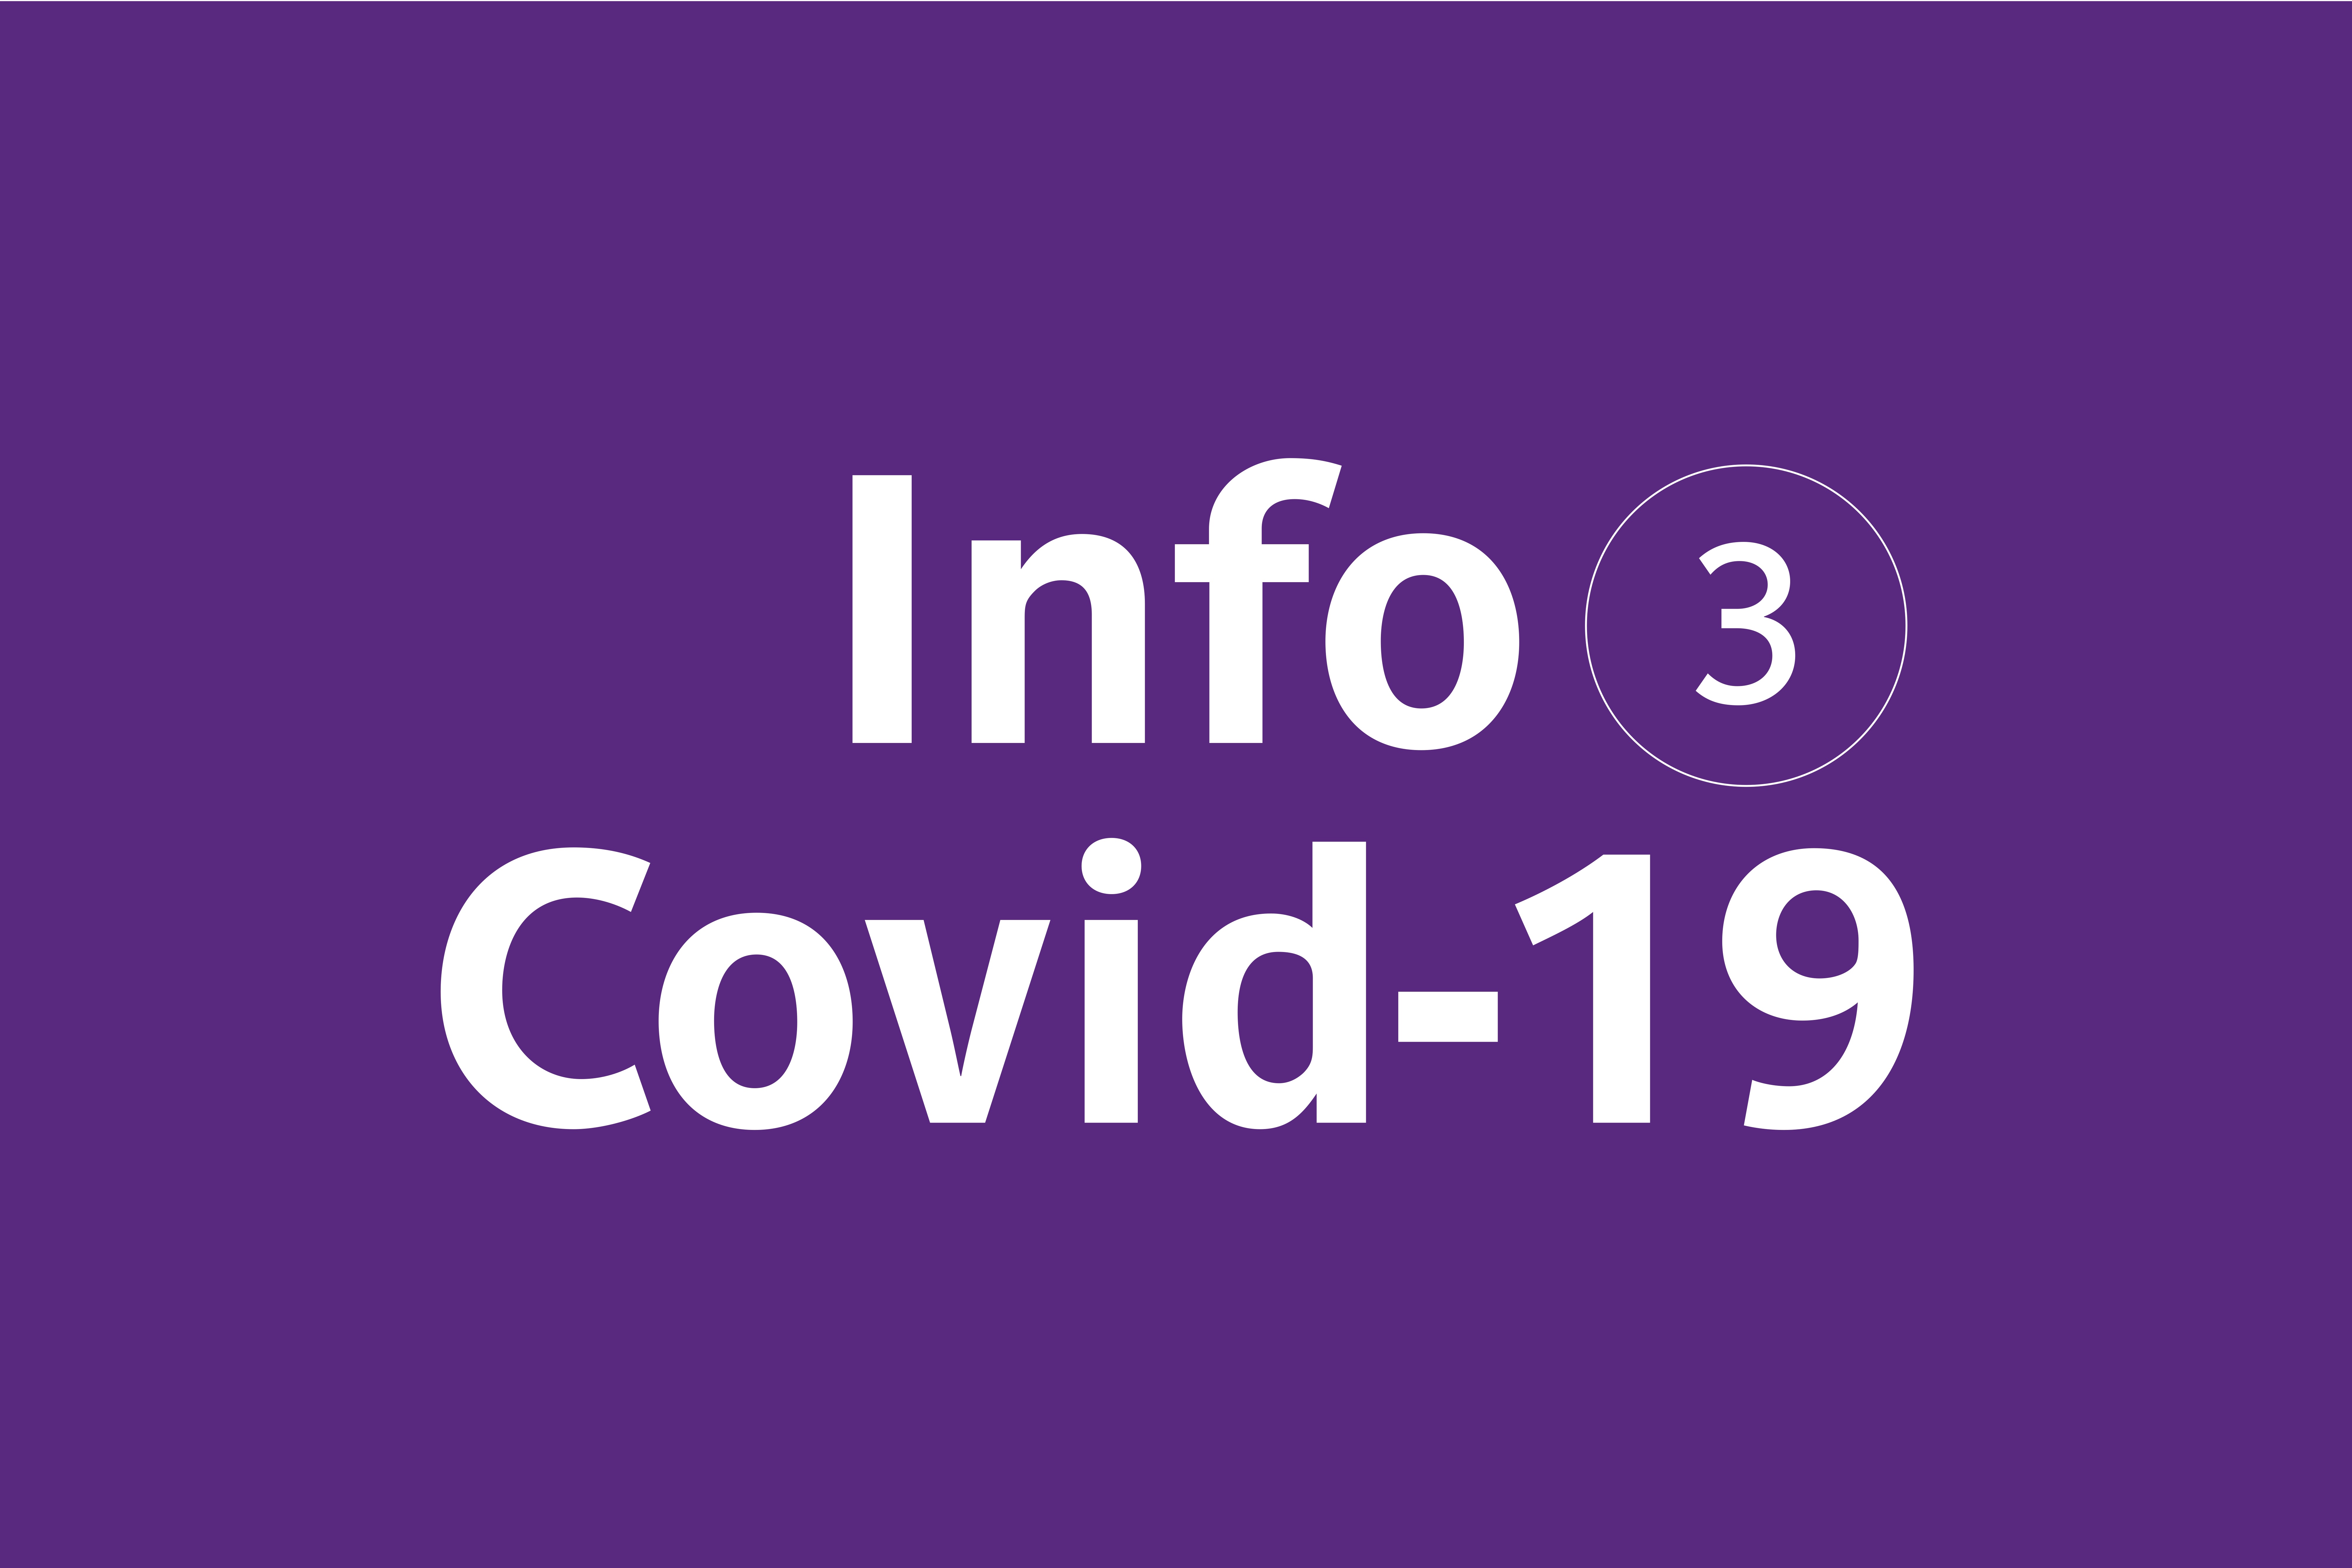 étiquette "Info Codiv-19"